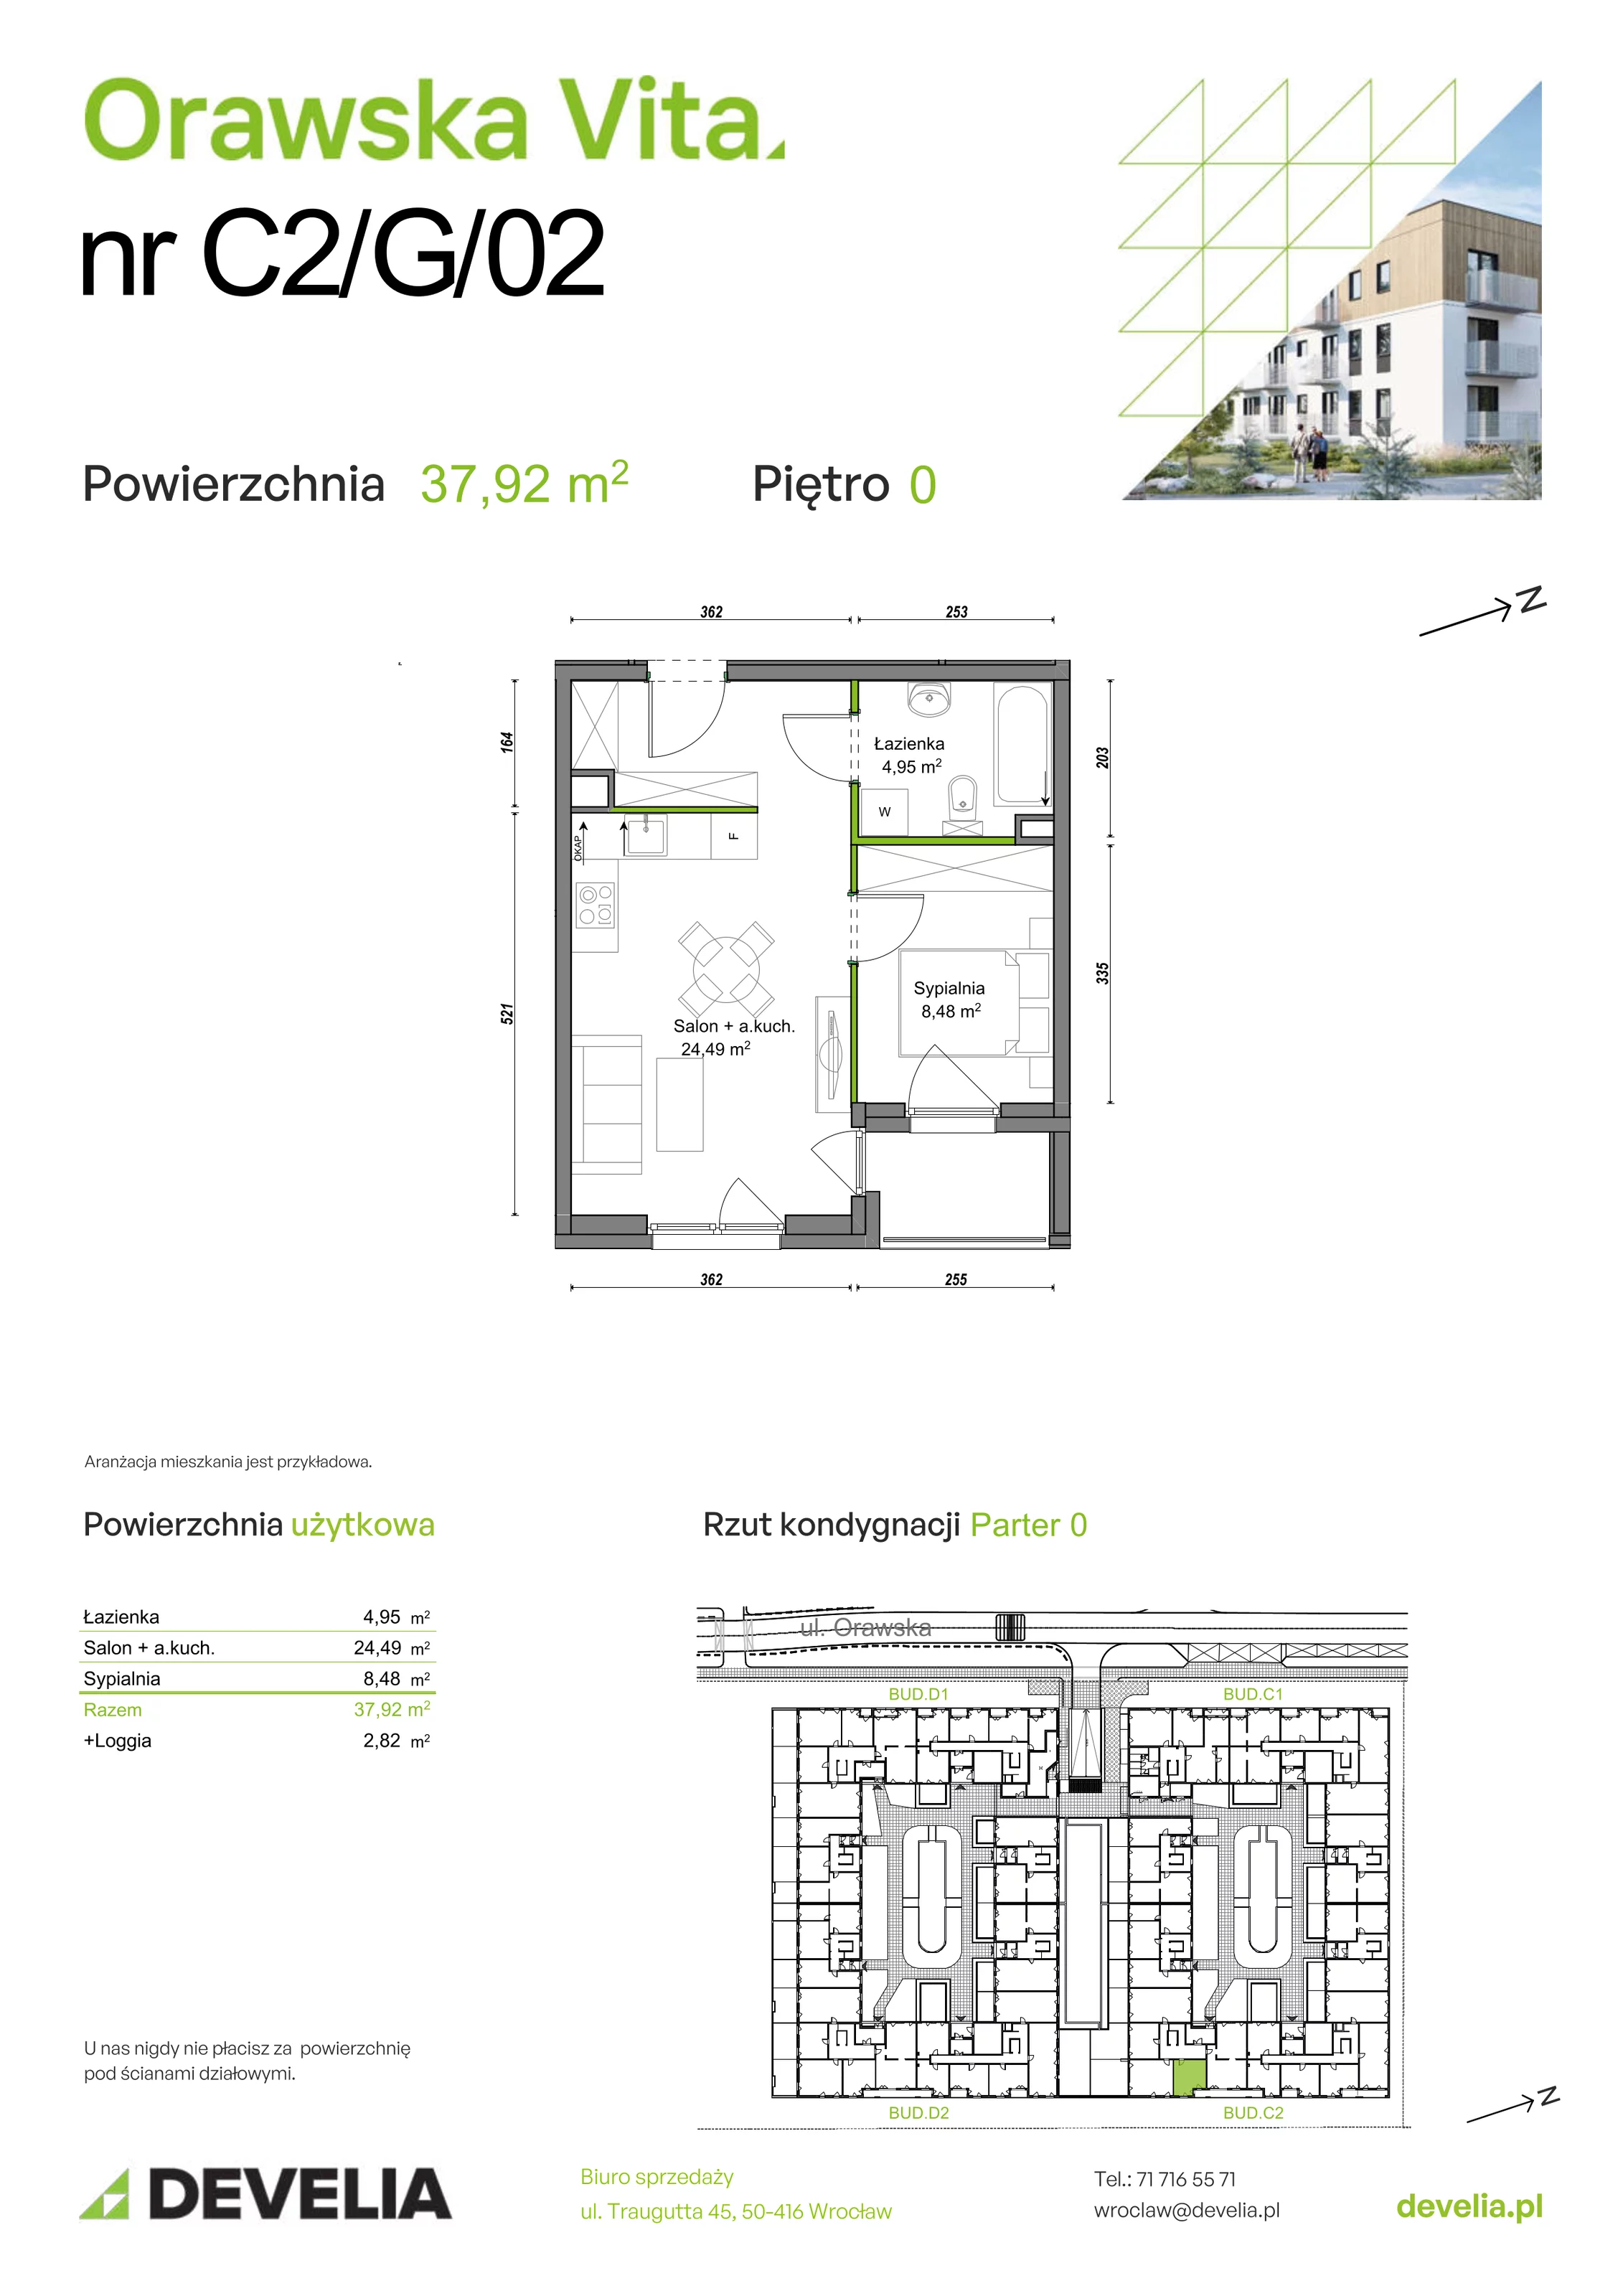 Mieszkanie 37,92 m², parter, oferta nr C2/G/02, Orawska Vita, Wrocław, Ołtaszyn, Krzyki, ul. Orawska 73